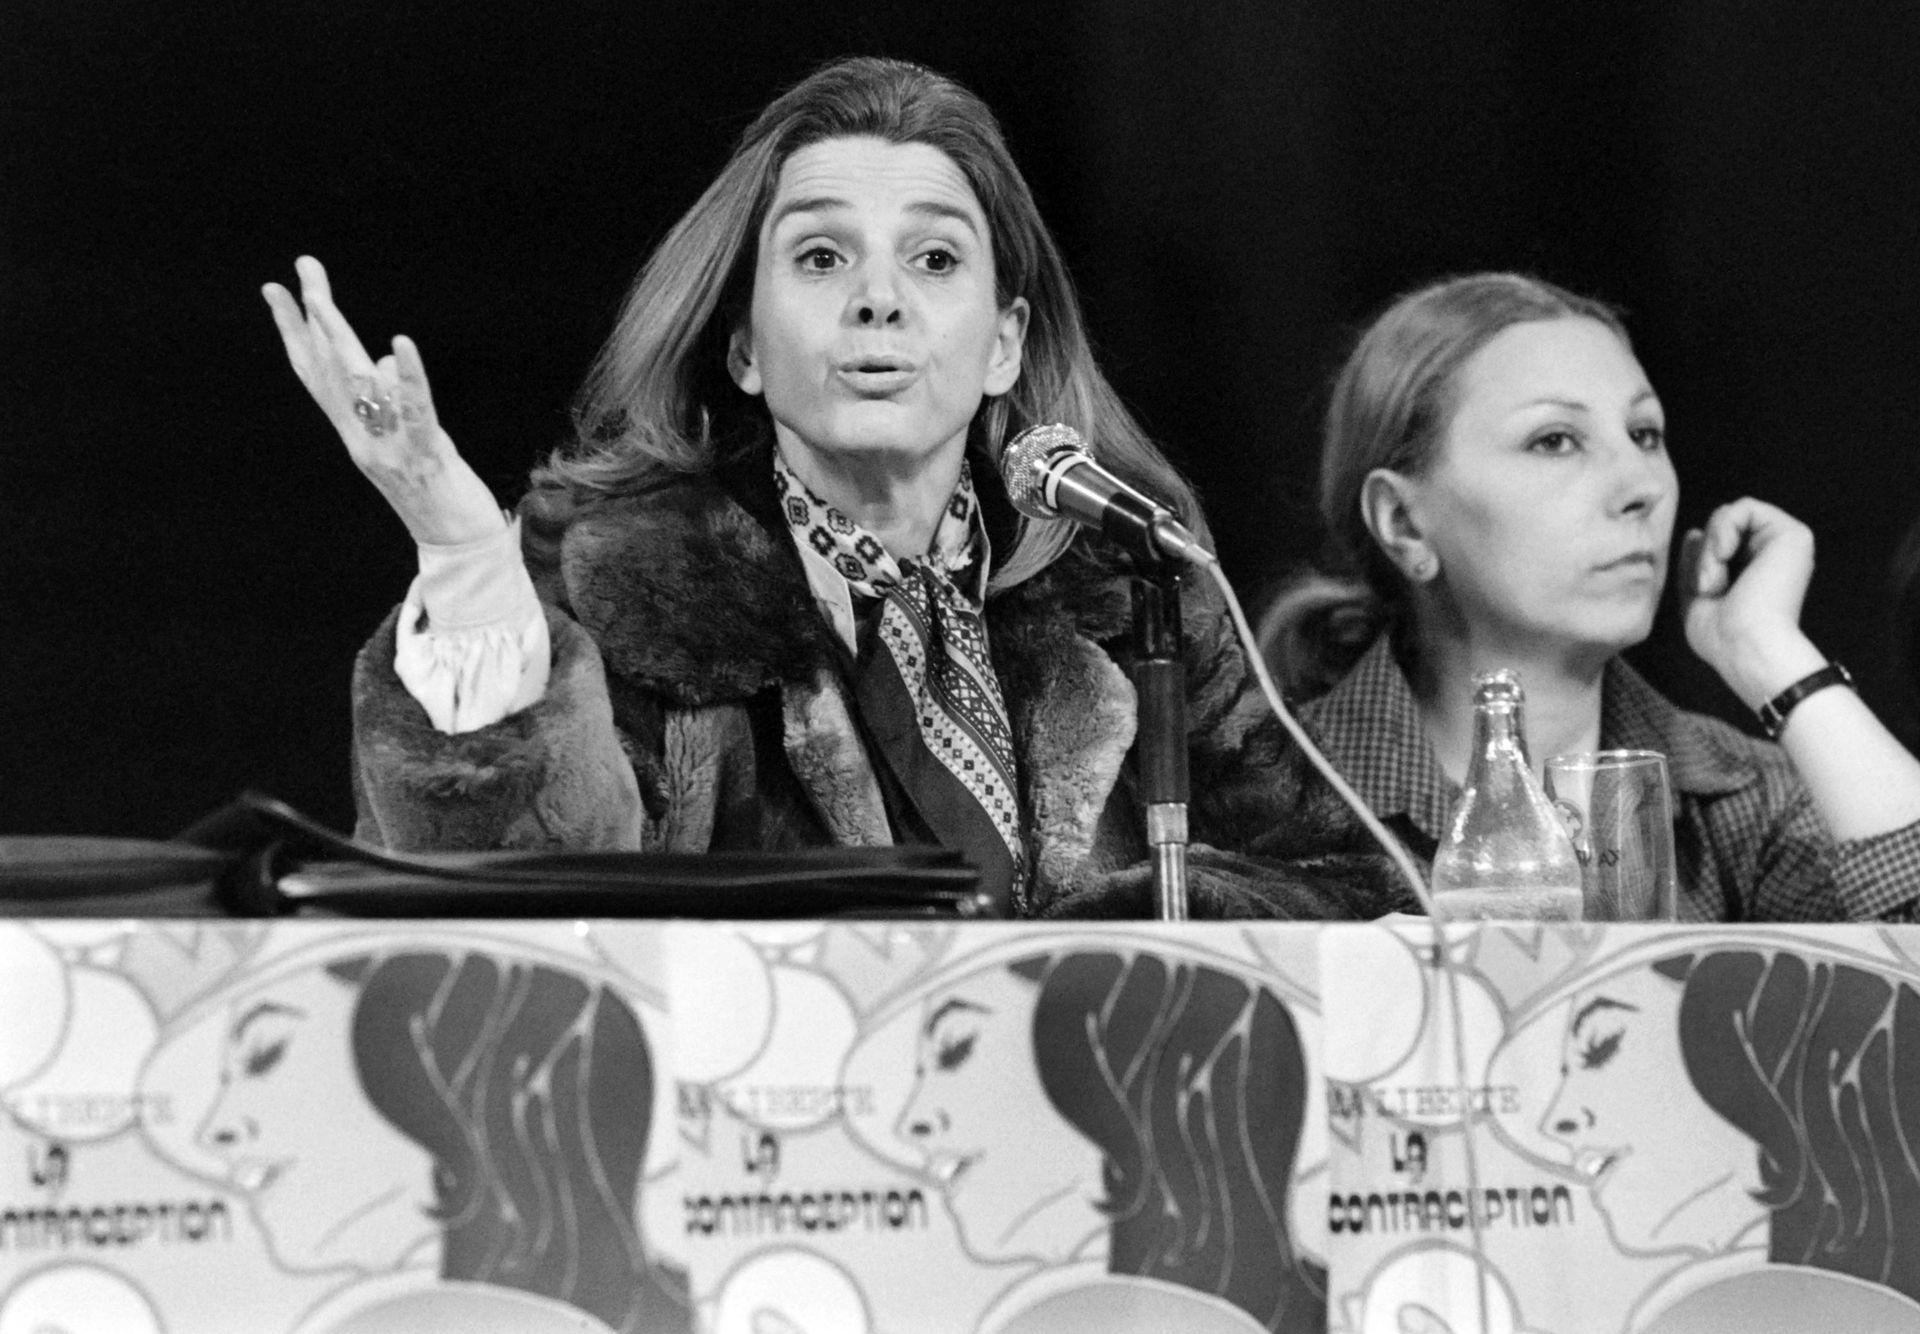 L'avocate Gisèle Halimi, responsable du mouvement féministe "Choisir", donne une conférence de presse à Toulouse, le 17 mars 1978